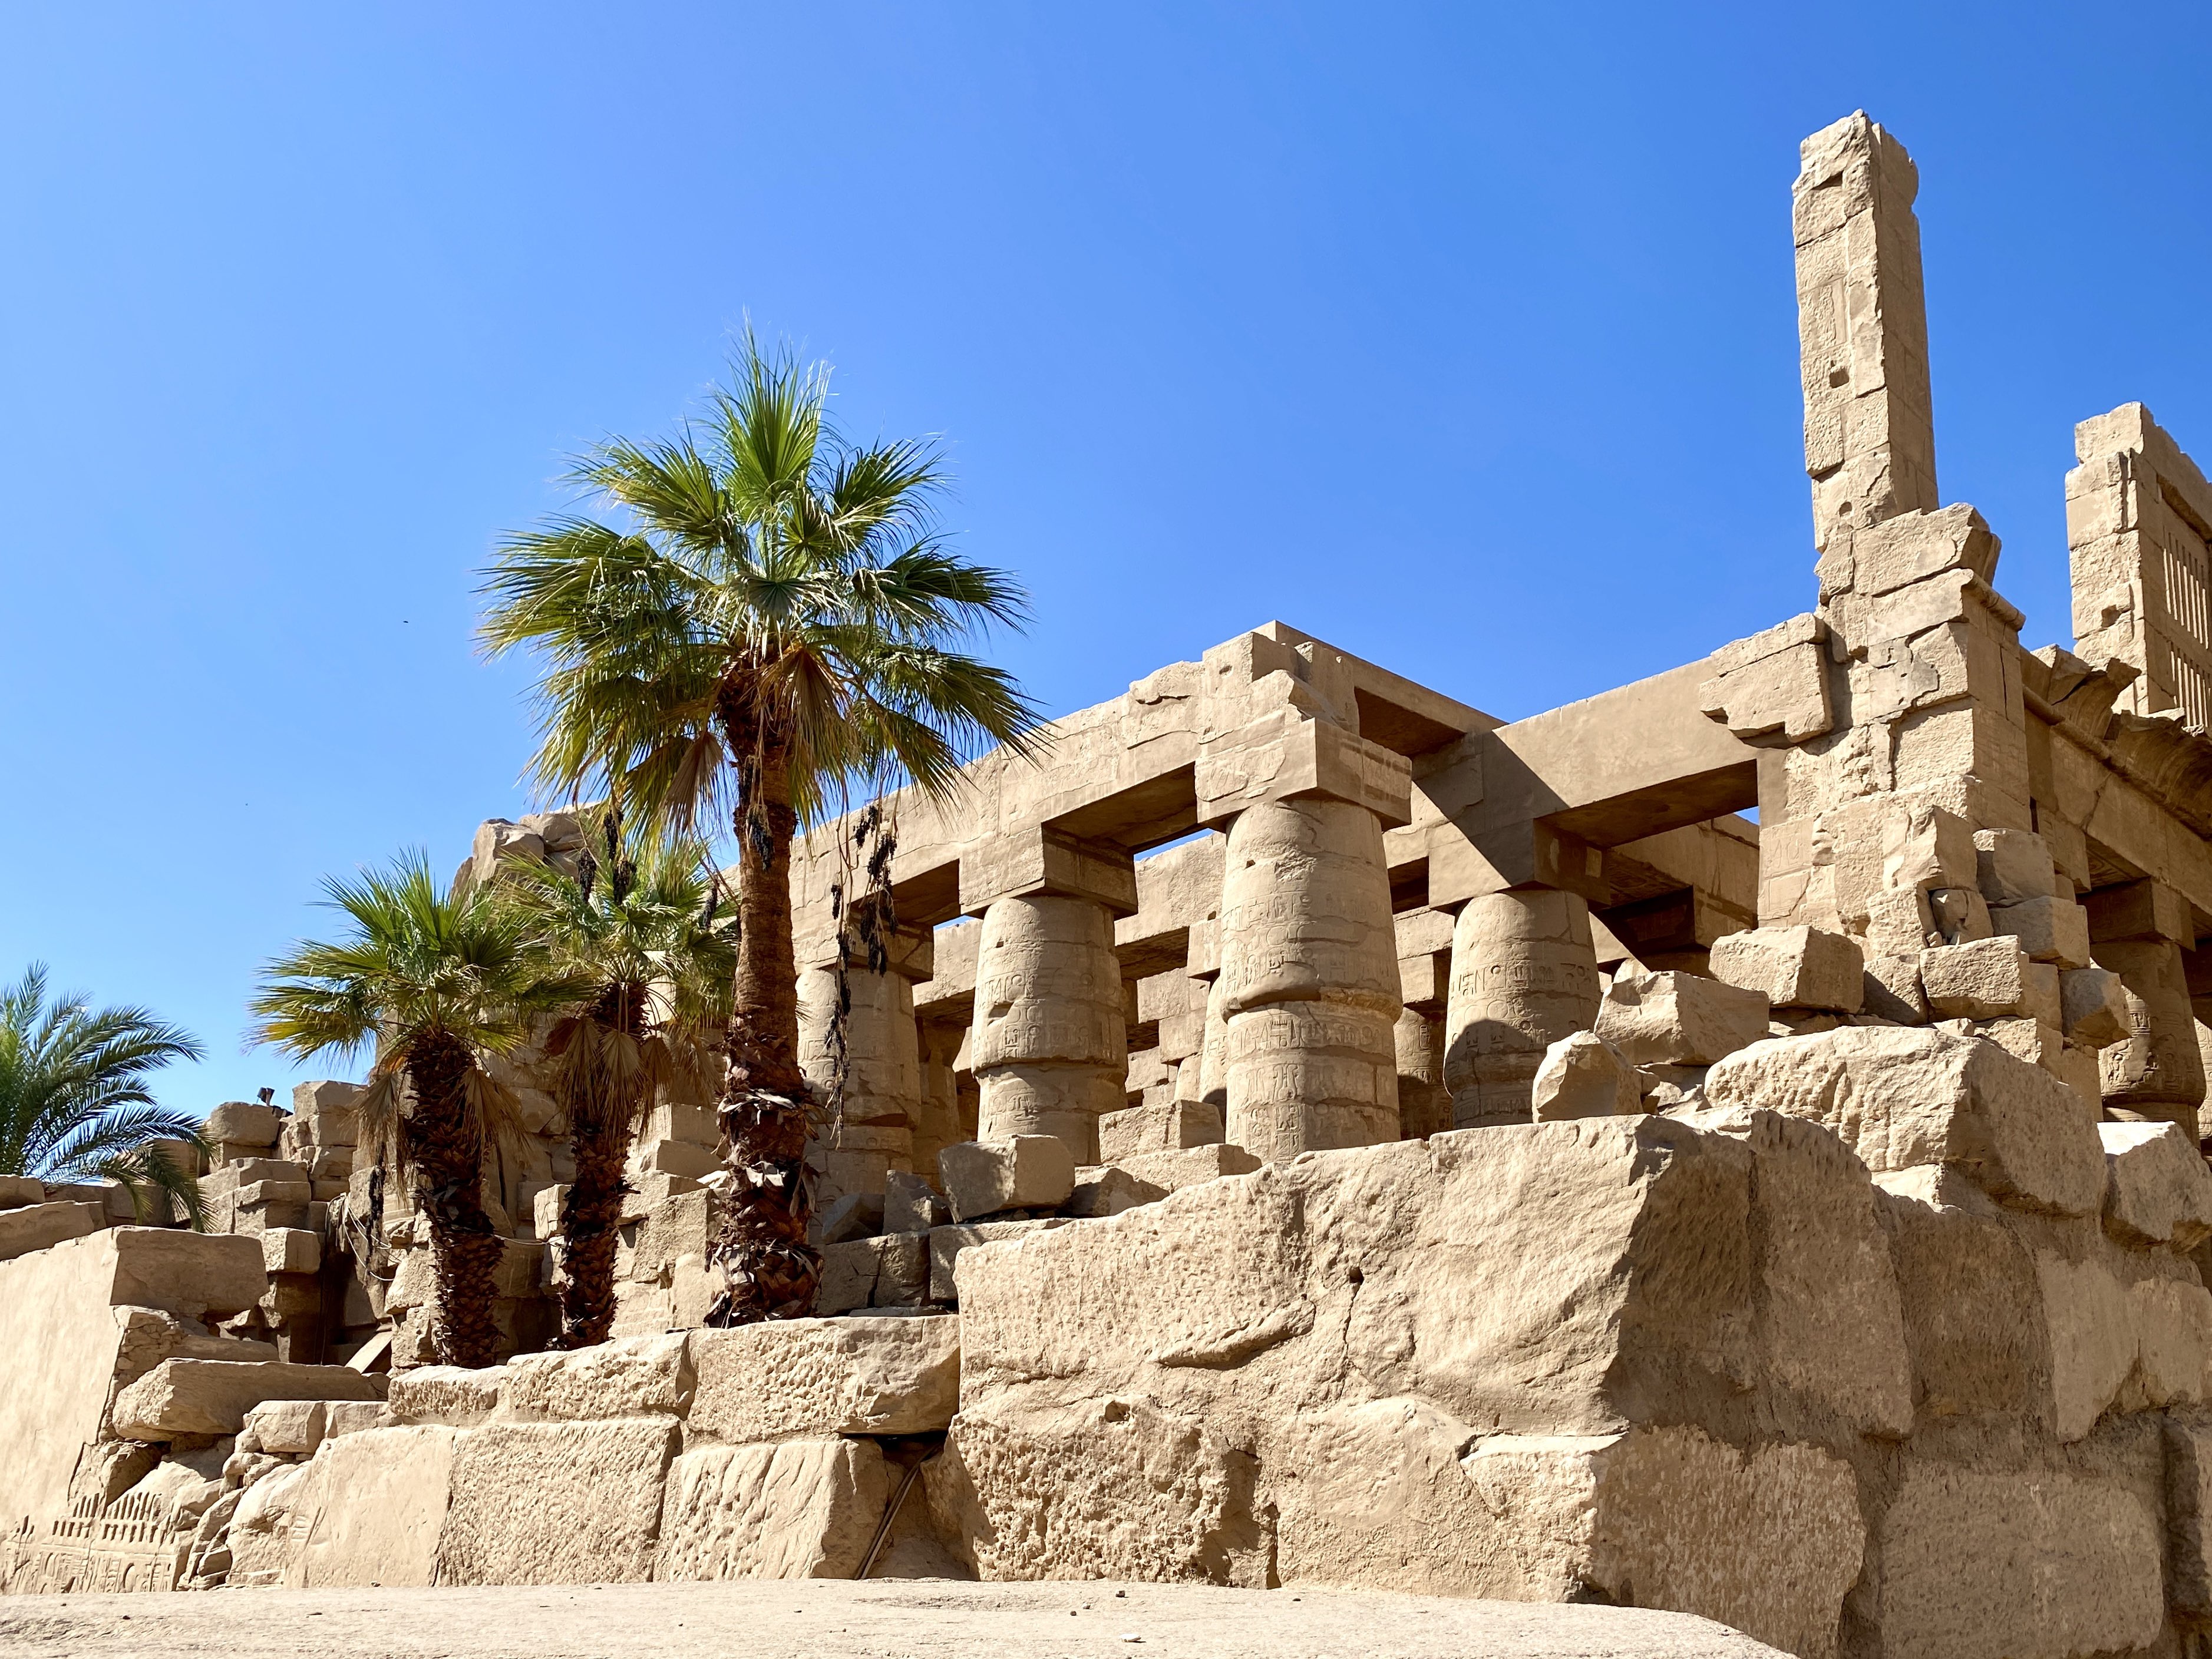 Templul Karnak, Luxor, Egipt